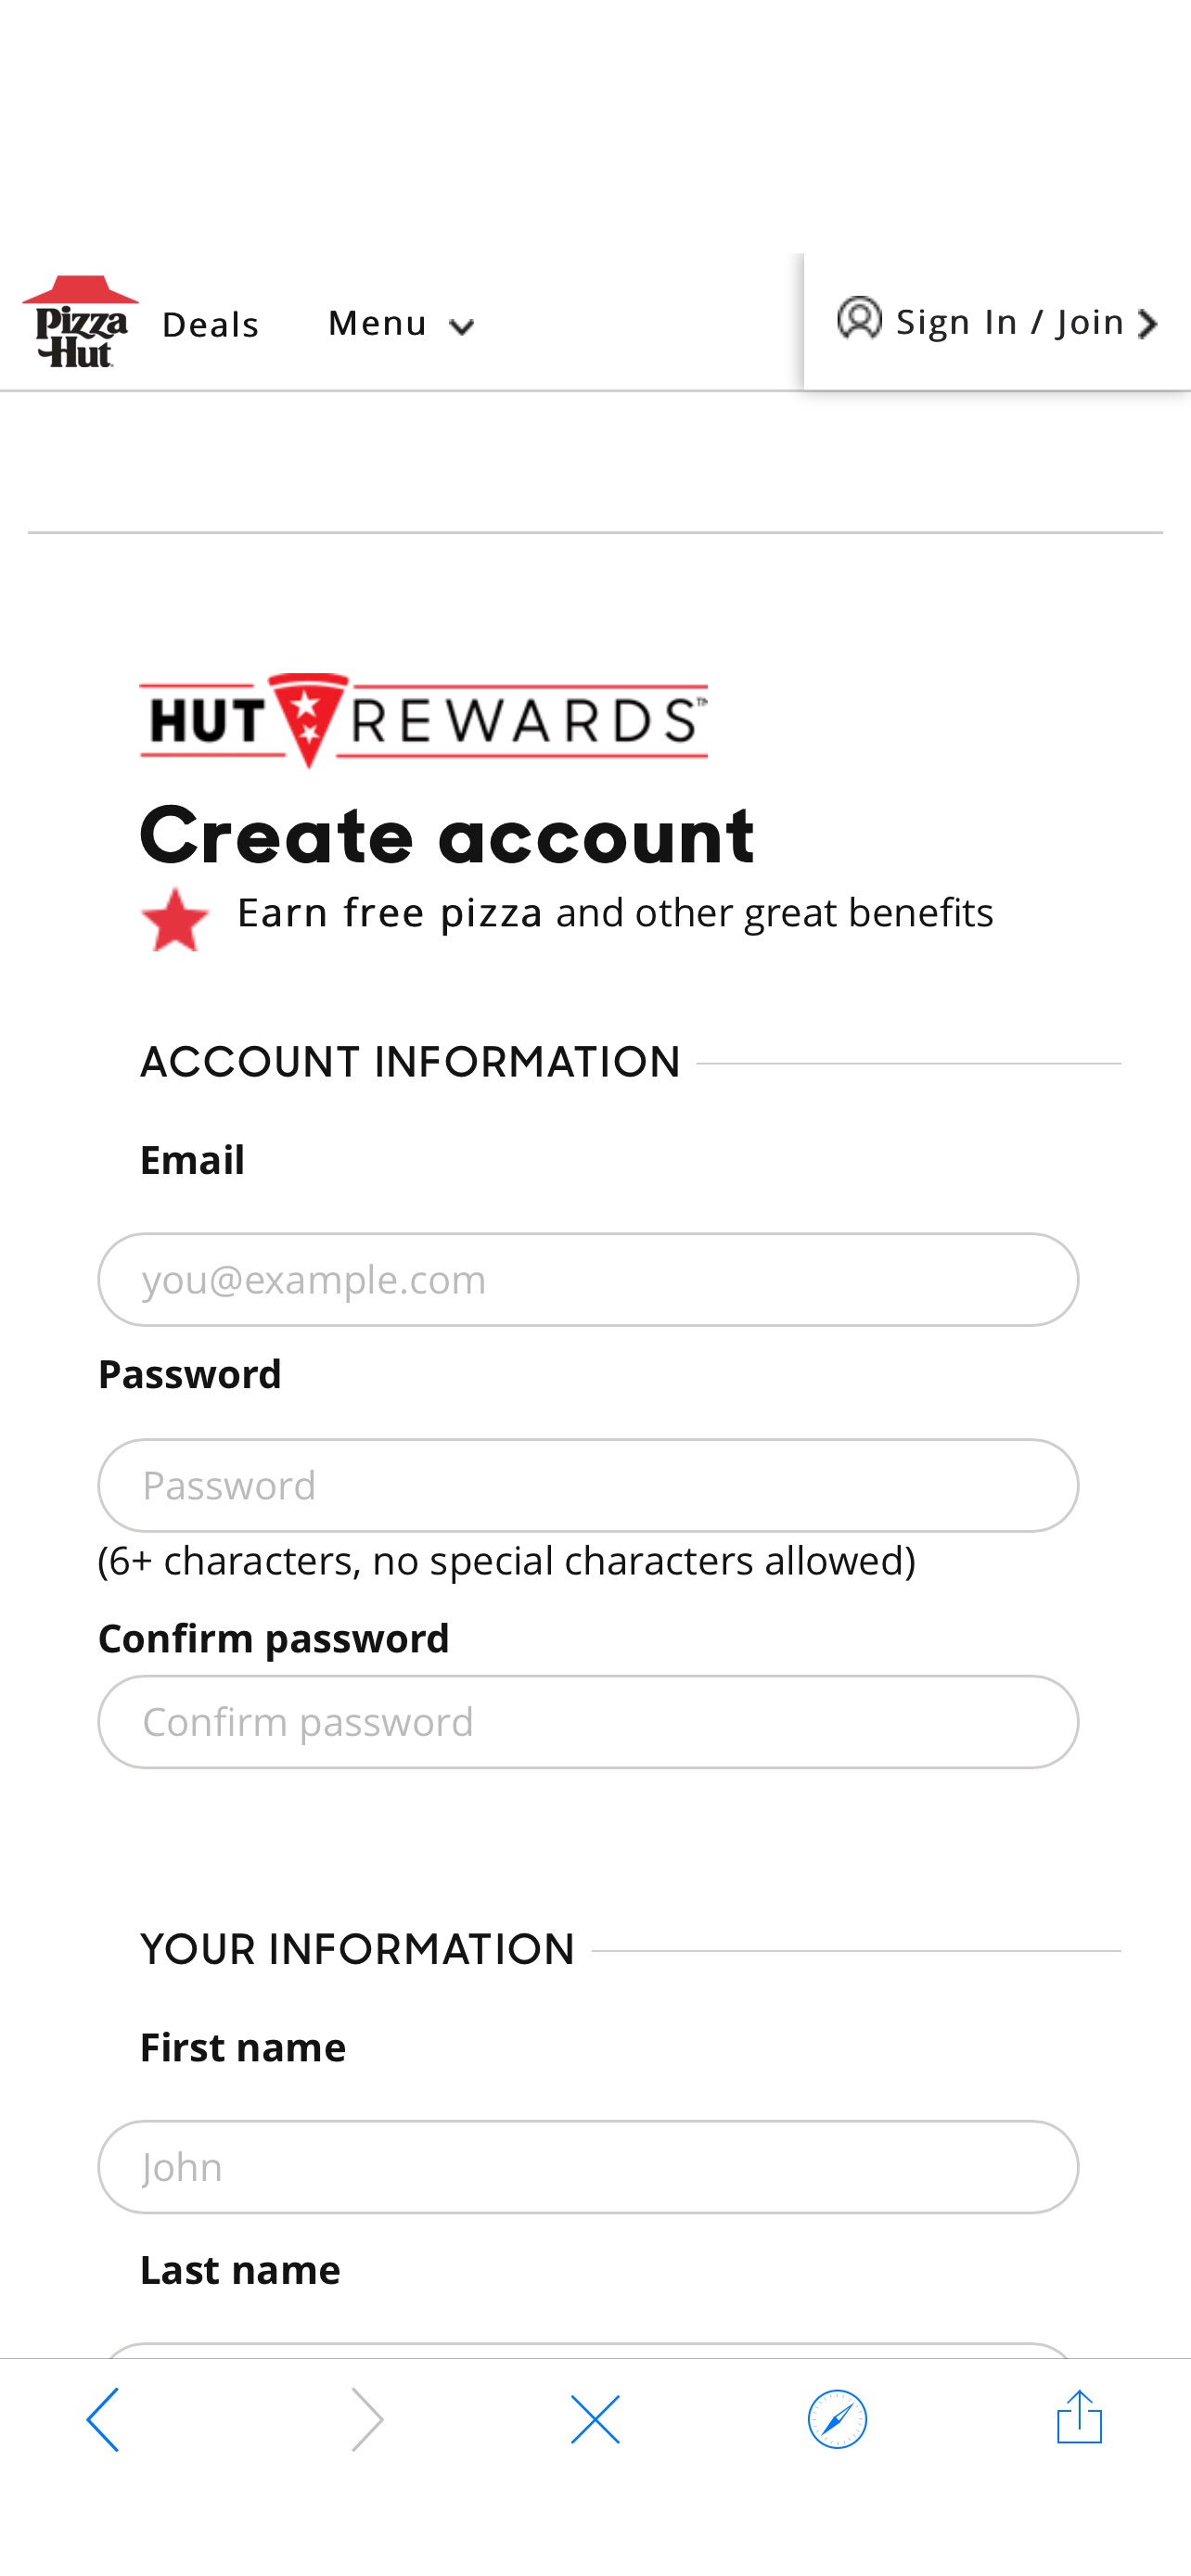 新注册用户获得免费pizza